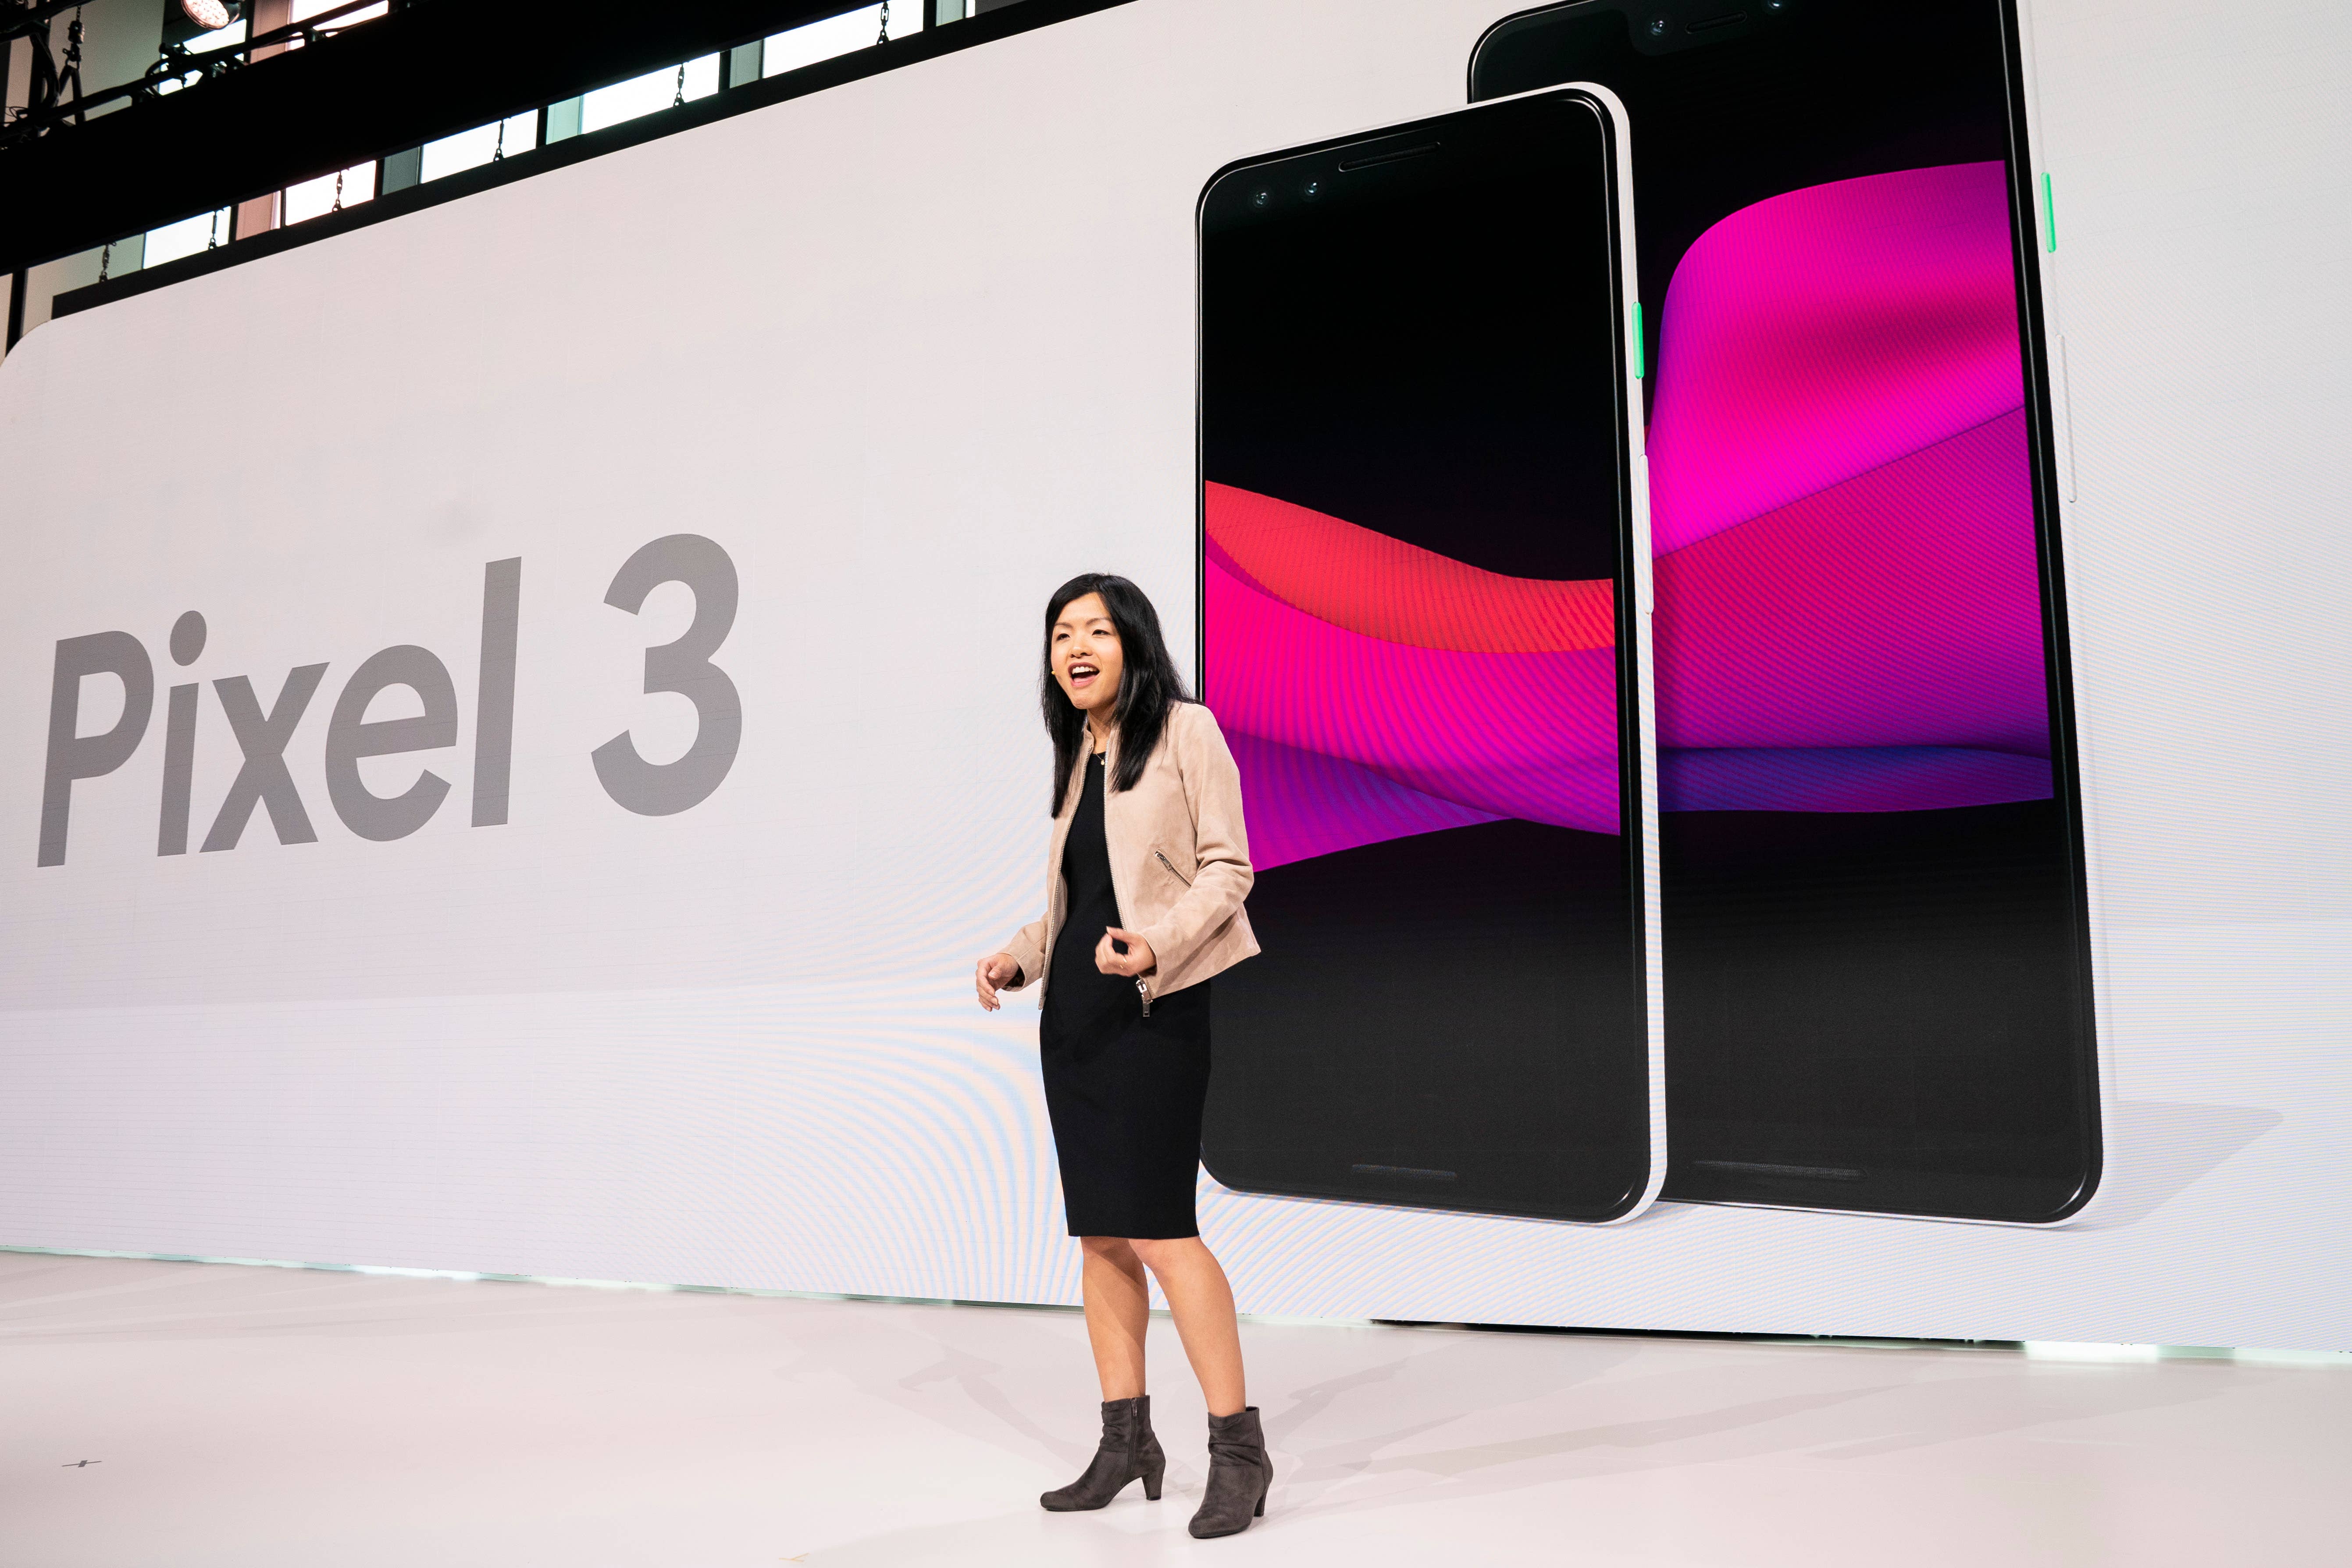 Liza Ma discusses the new Google Pixel 3 and Pixel 3 XL smartphones